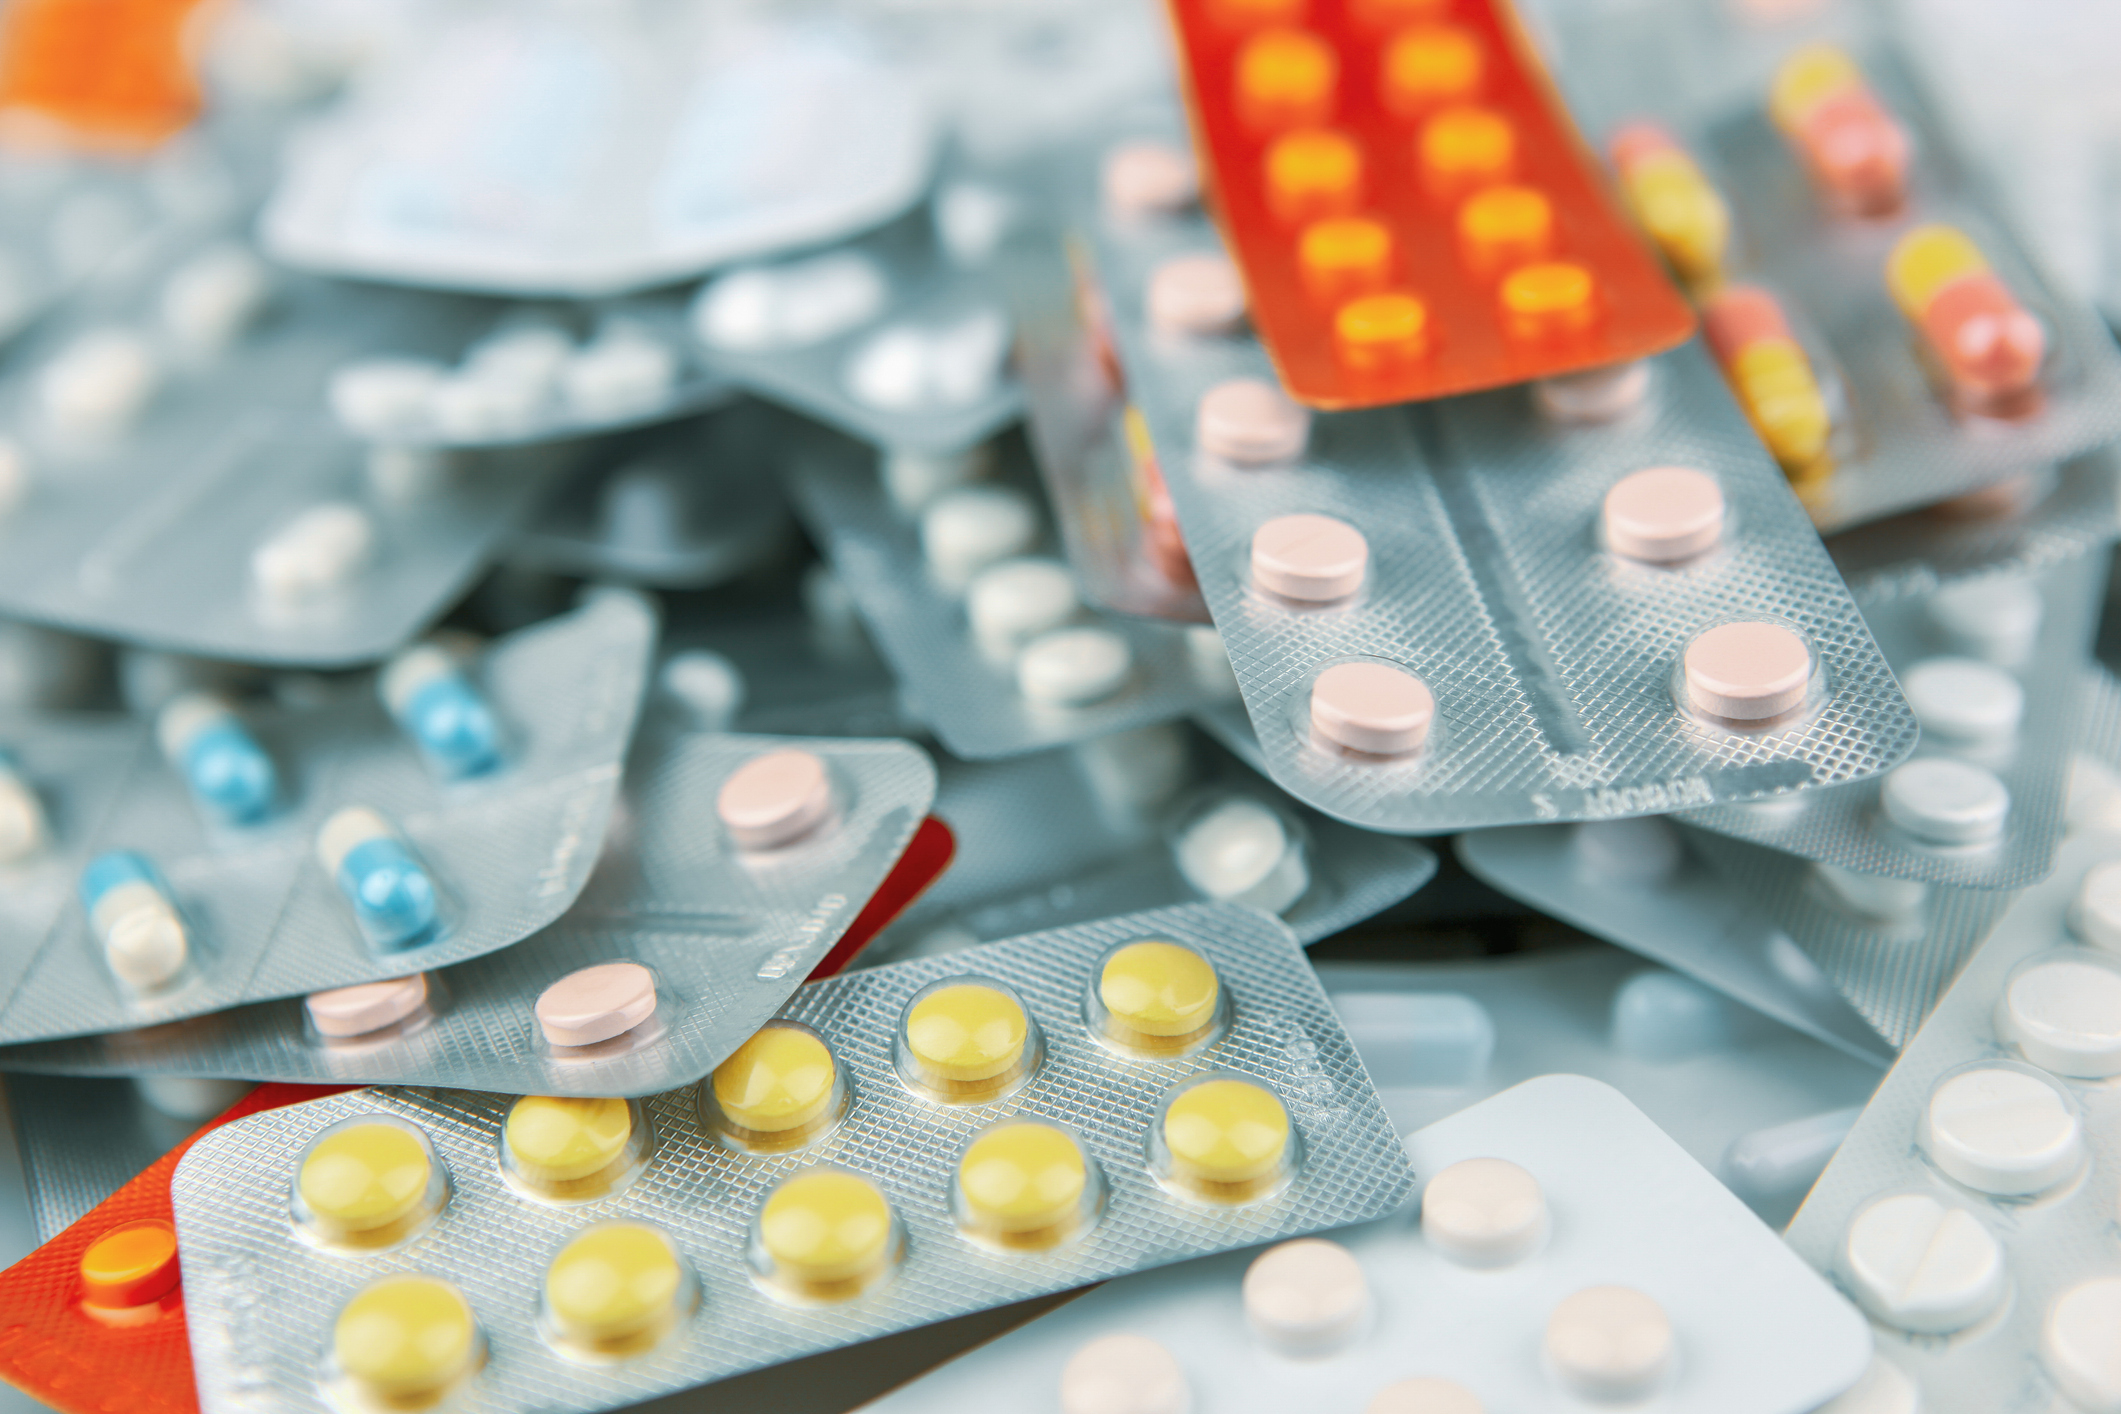 Avertizări cu privire la medicamentele contrafăcute vândute de sărbători și ”leacurile miraculoase” împotriva Covid-19